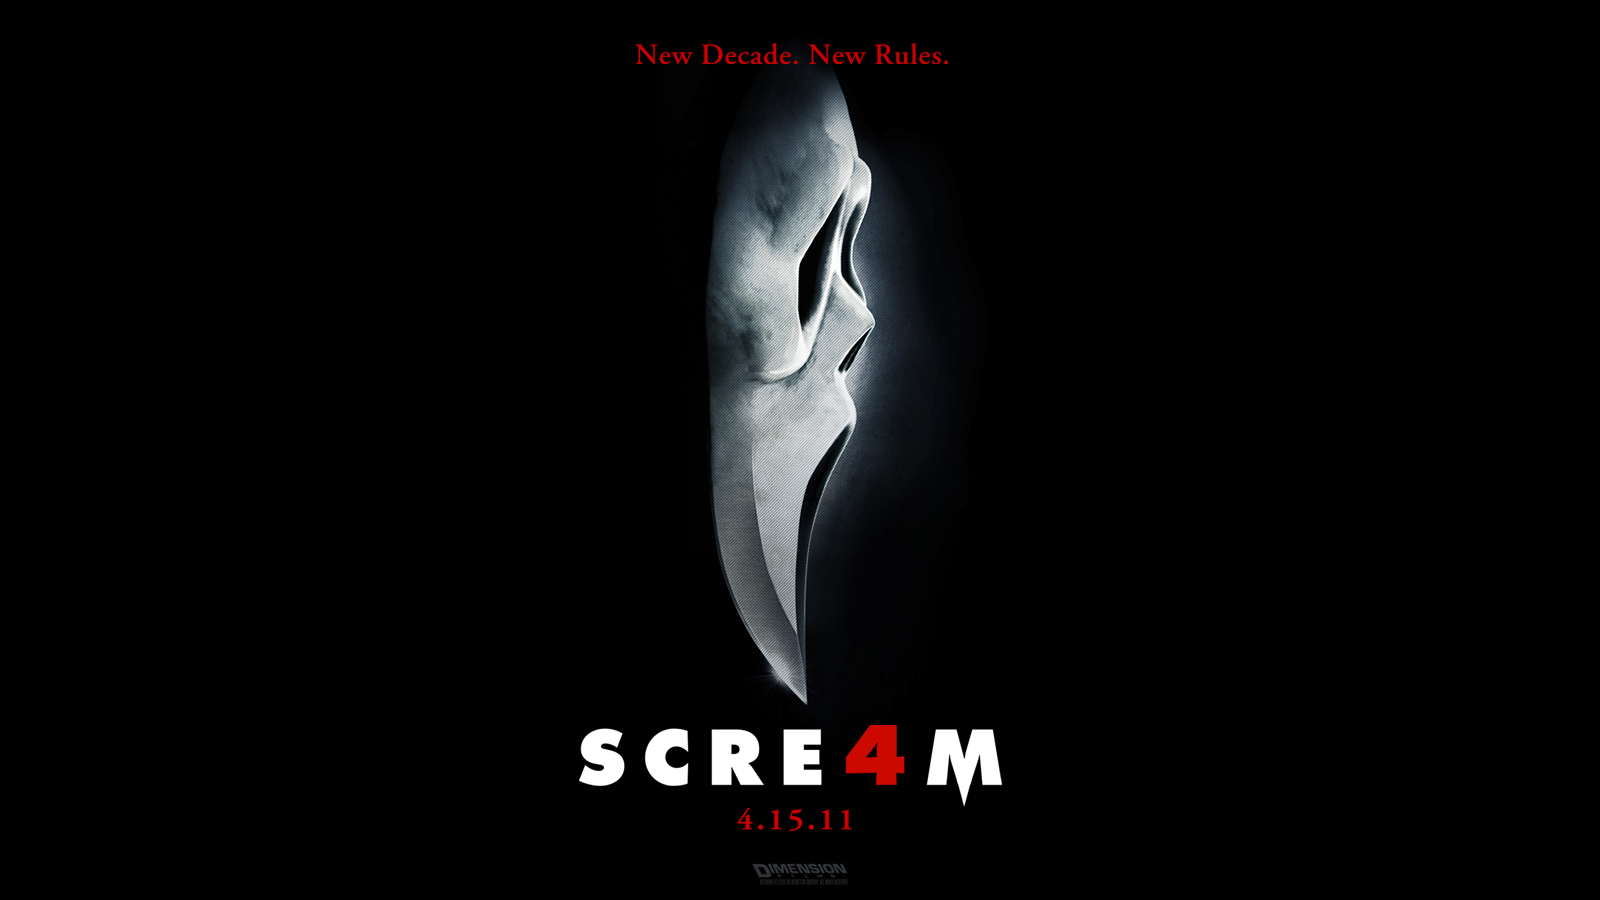 Descargar fondos de escritorio de Scream 4 HD